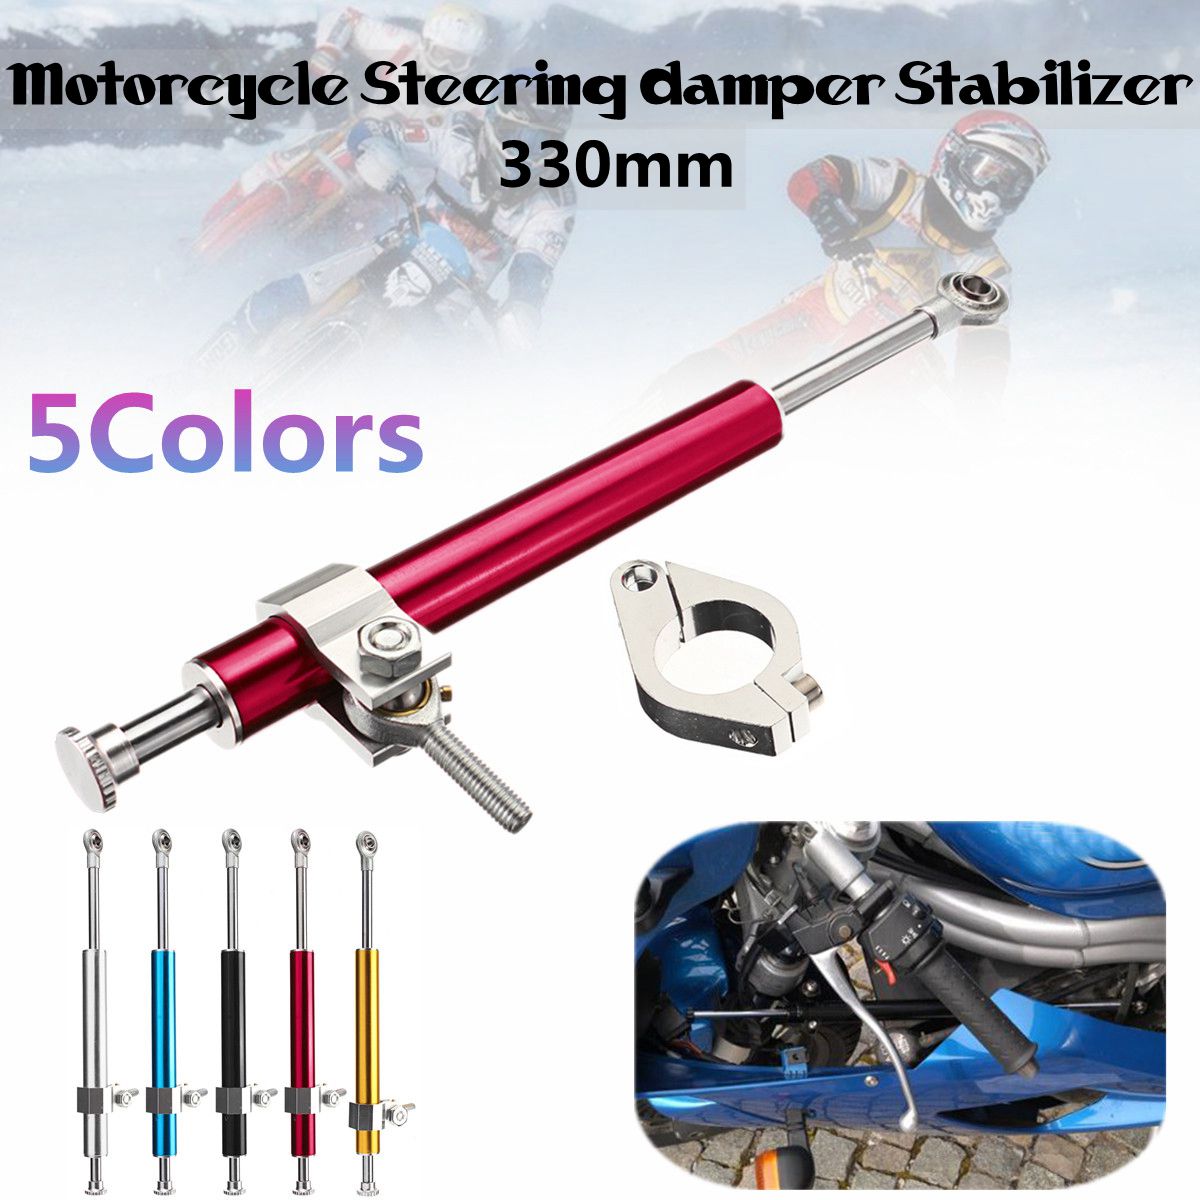 Motorcycle Steering Damper Stabilizer